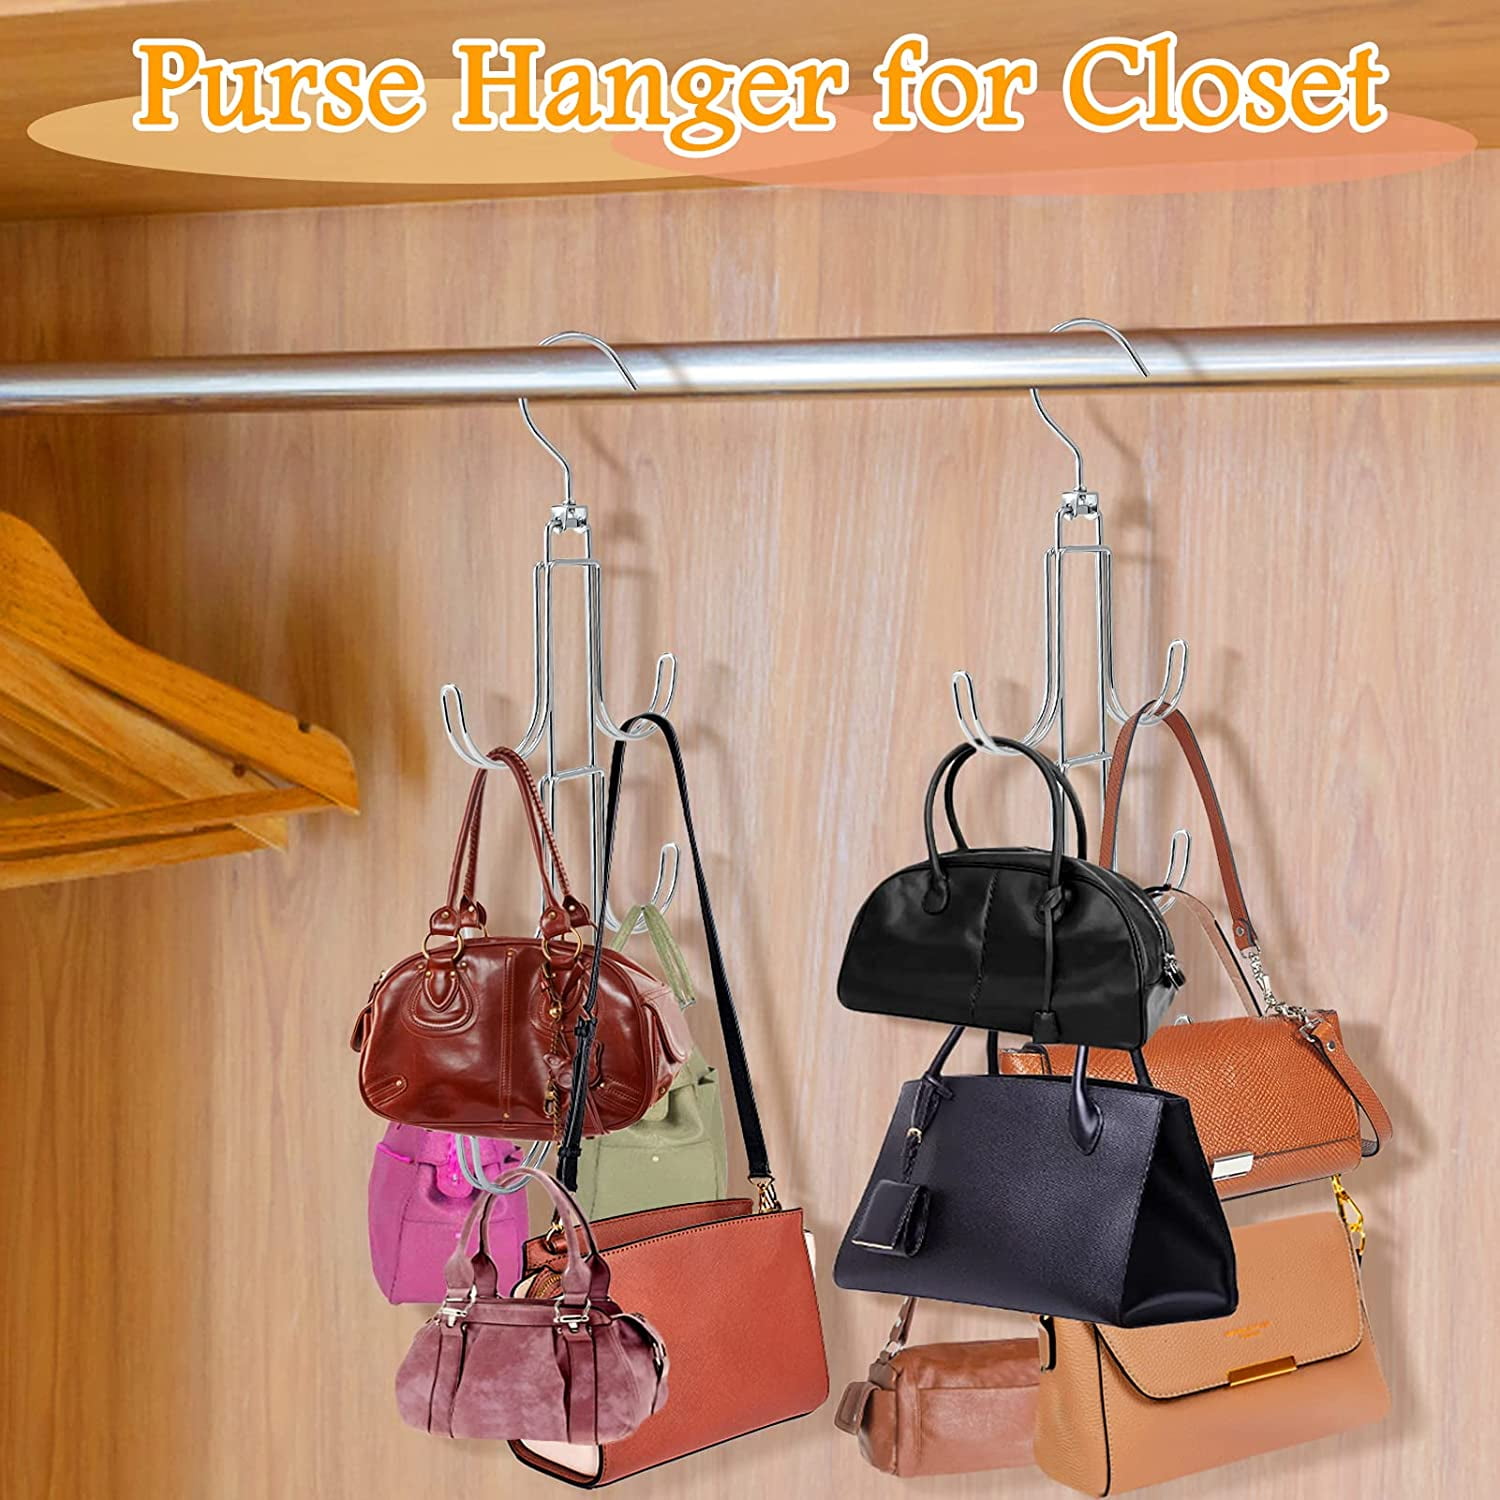 OBPSFY 10 Pcs Purse Hangers for Closet | Unique Twist Design Bags Hanger  Hooks | Closet